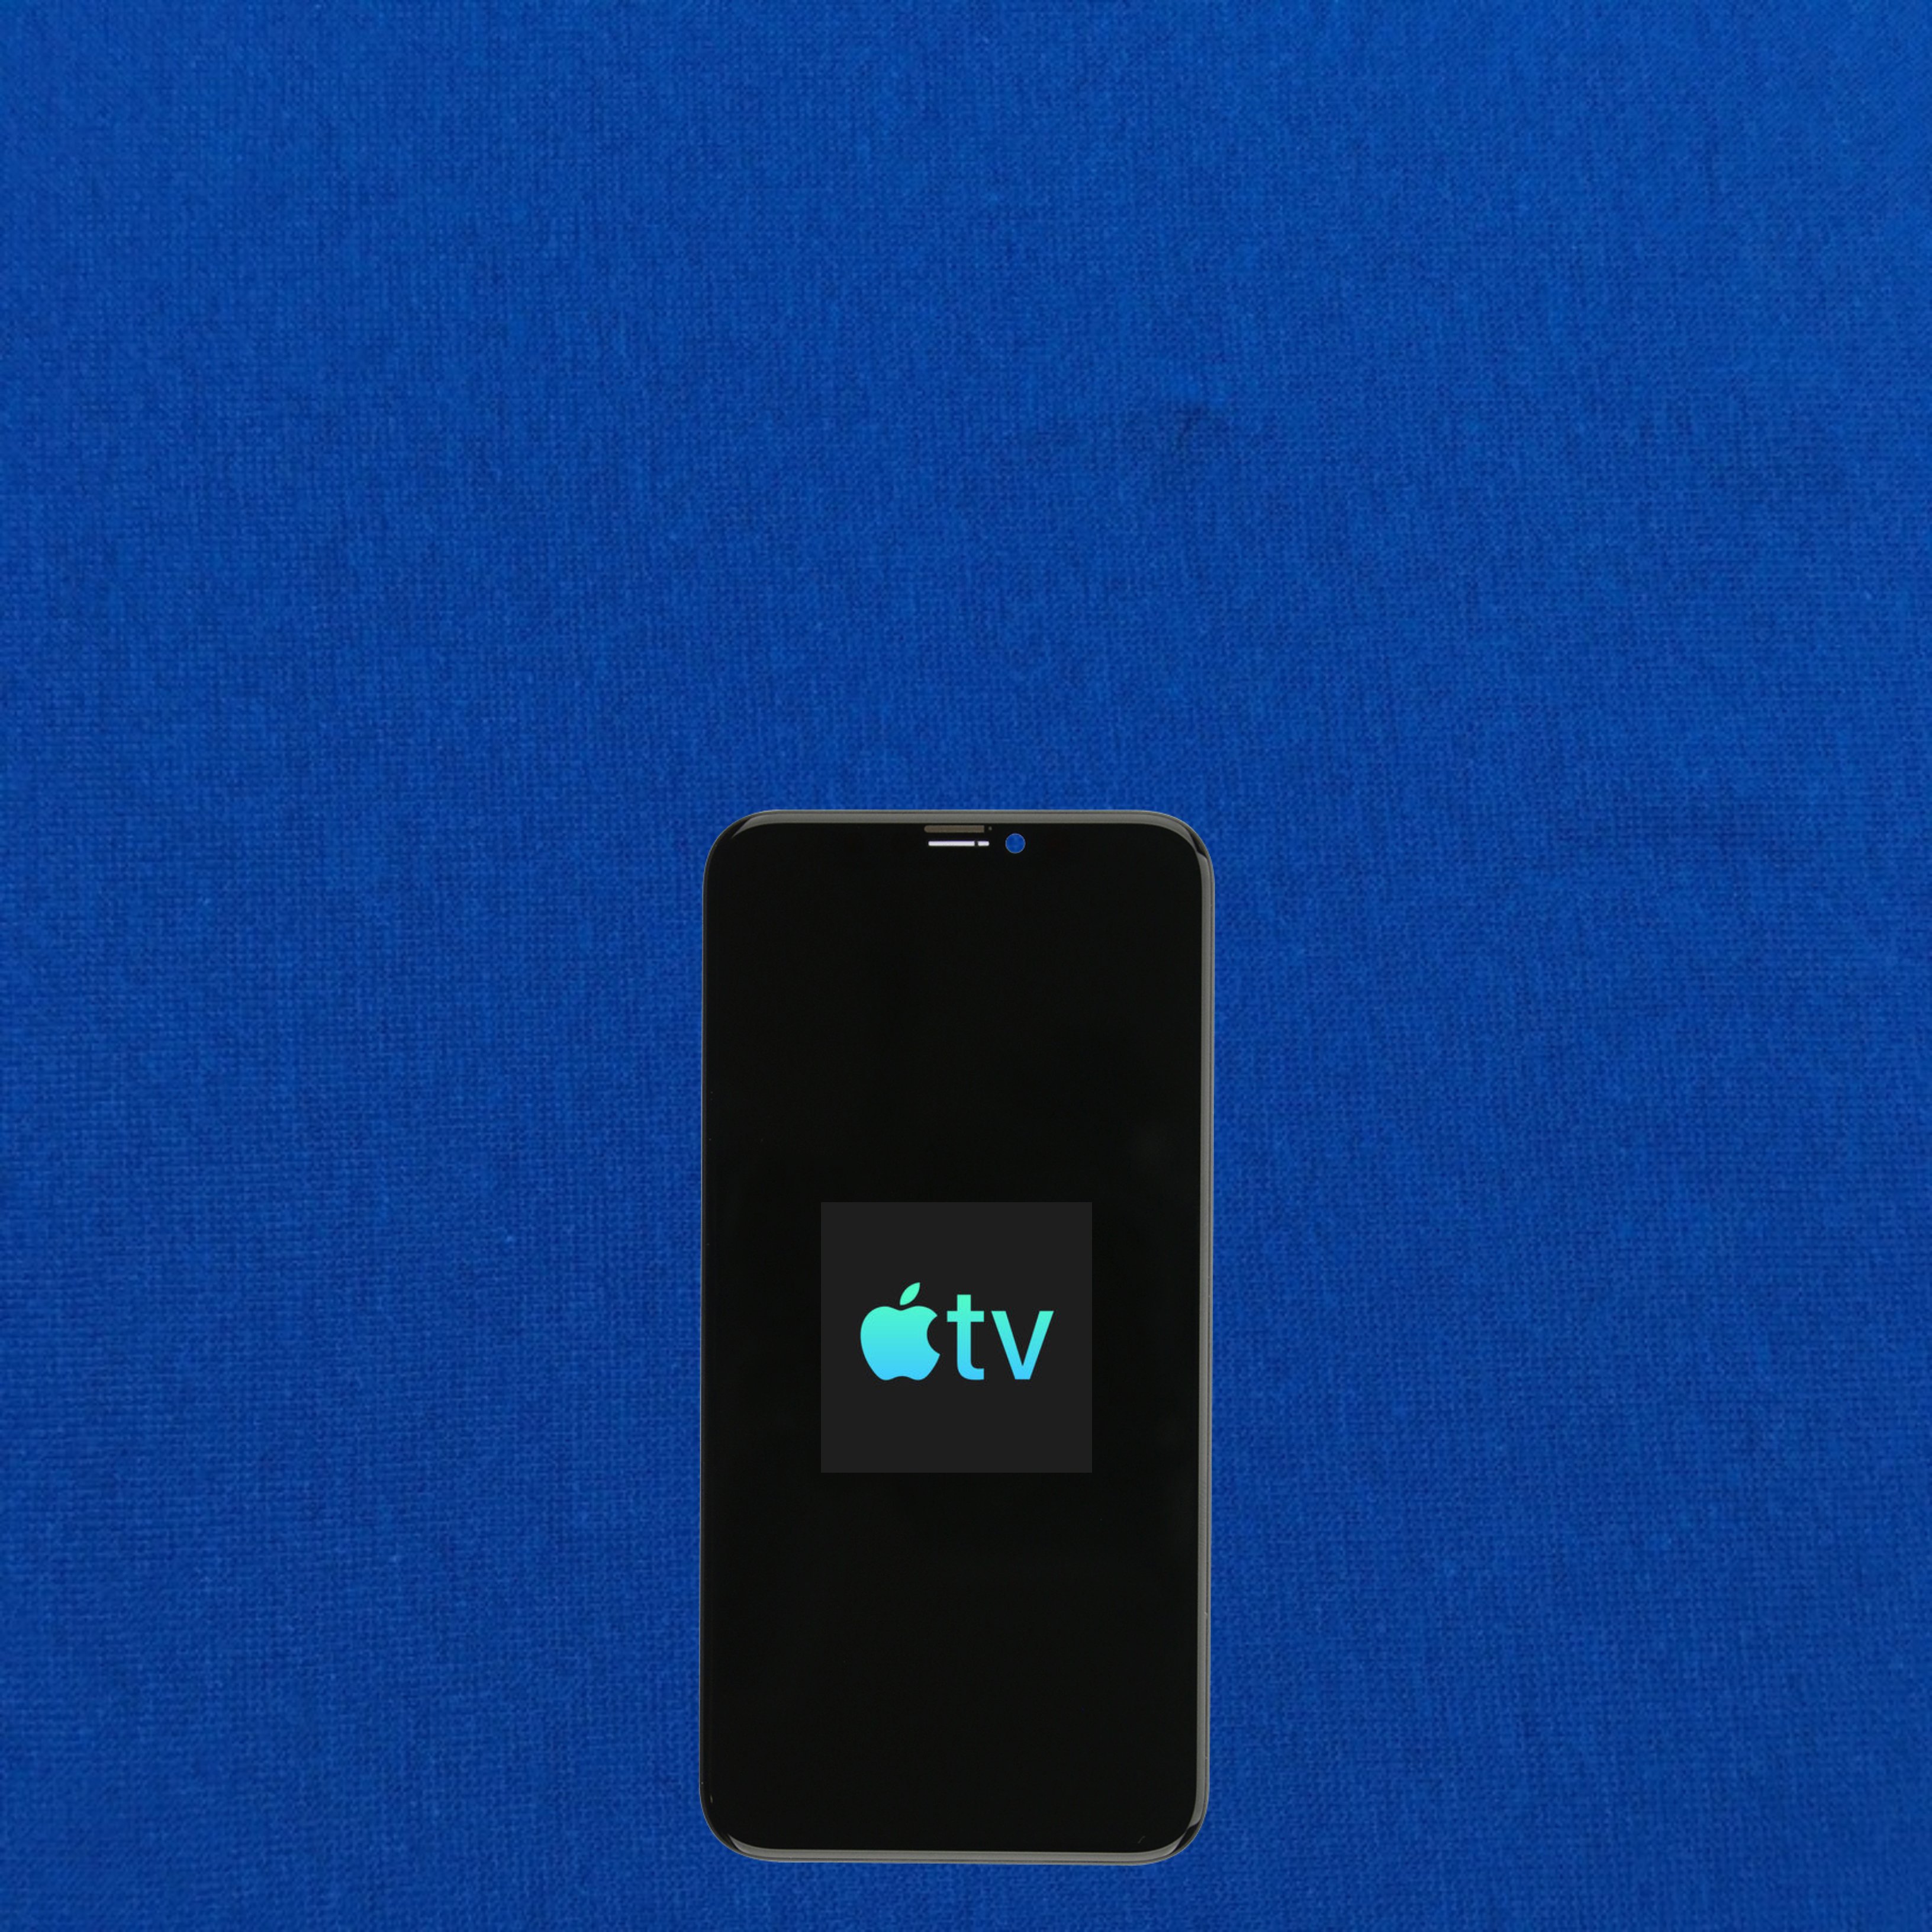 Llega la nueva app Apple TV para el iPhone y el iPad